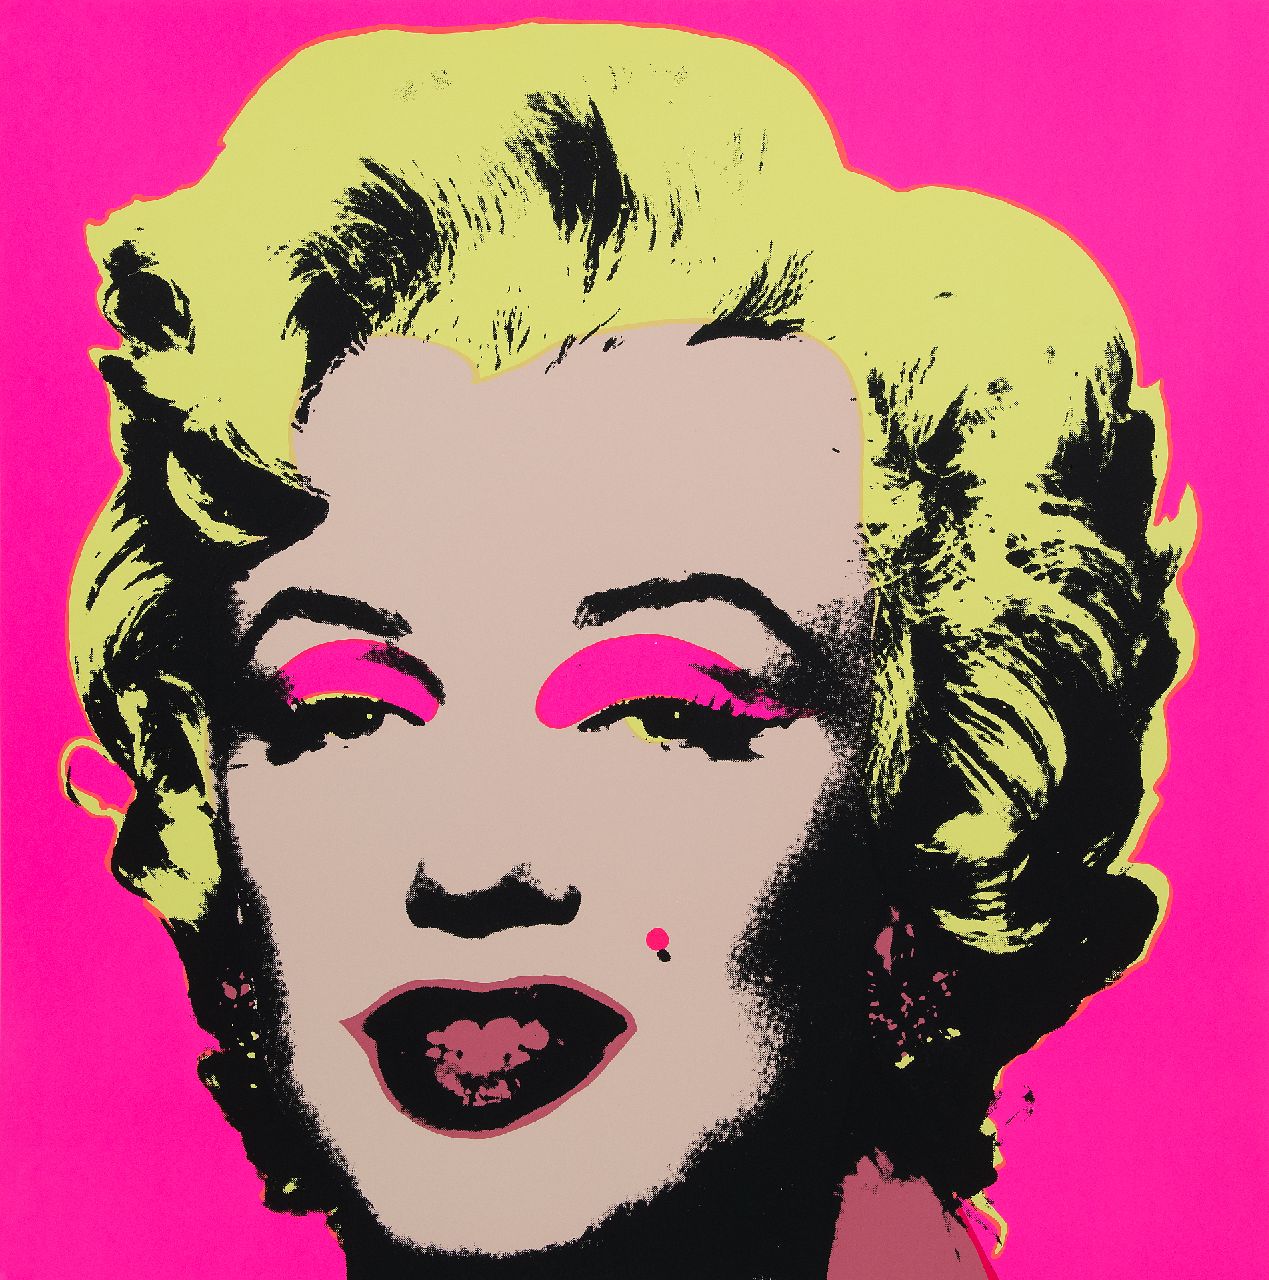 Naar Andy Warhol   | Naar Andy Warhol | Grafiek te koop aangeboden | Marilyn, zeefdruk op papier 91,0 x 91,0 cm, prijs zonder lijst